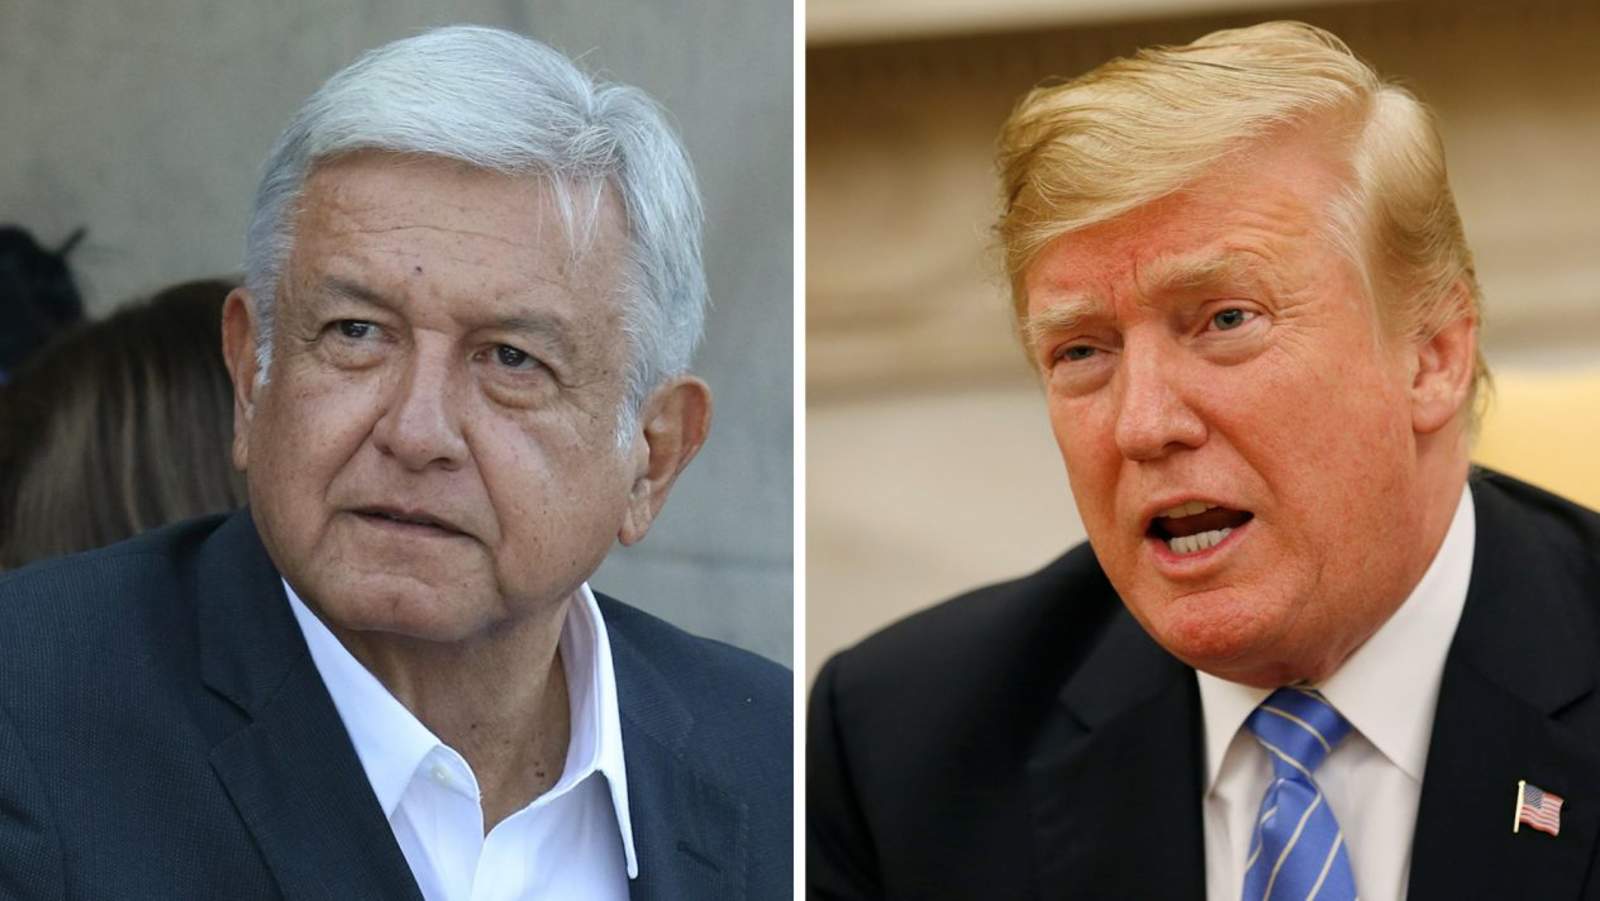 El acuerdo alcanzado entre Trump y López Obrador establece que cualquier persona llegada a la frontera sur de Estados Unidos a través de México deberá permanecer allí mientras se procesa su petición, de acuerdo con el diario. (ARCHIVO)